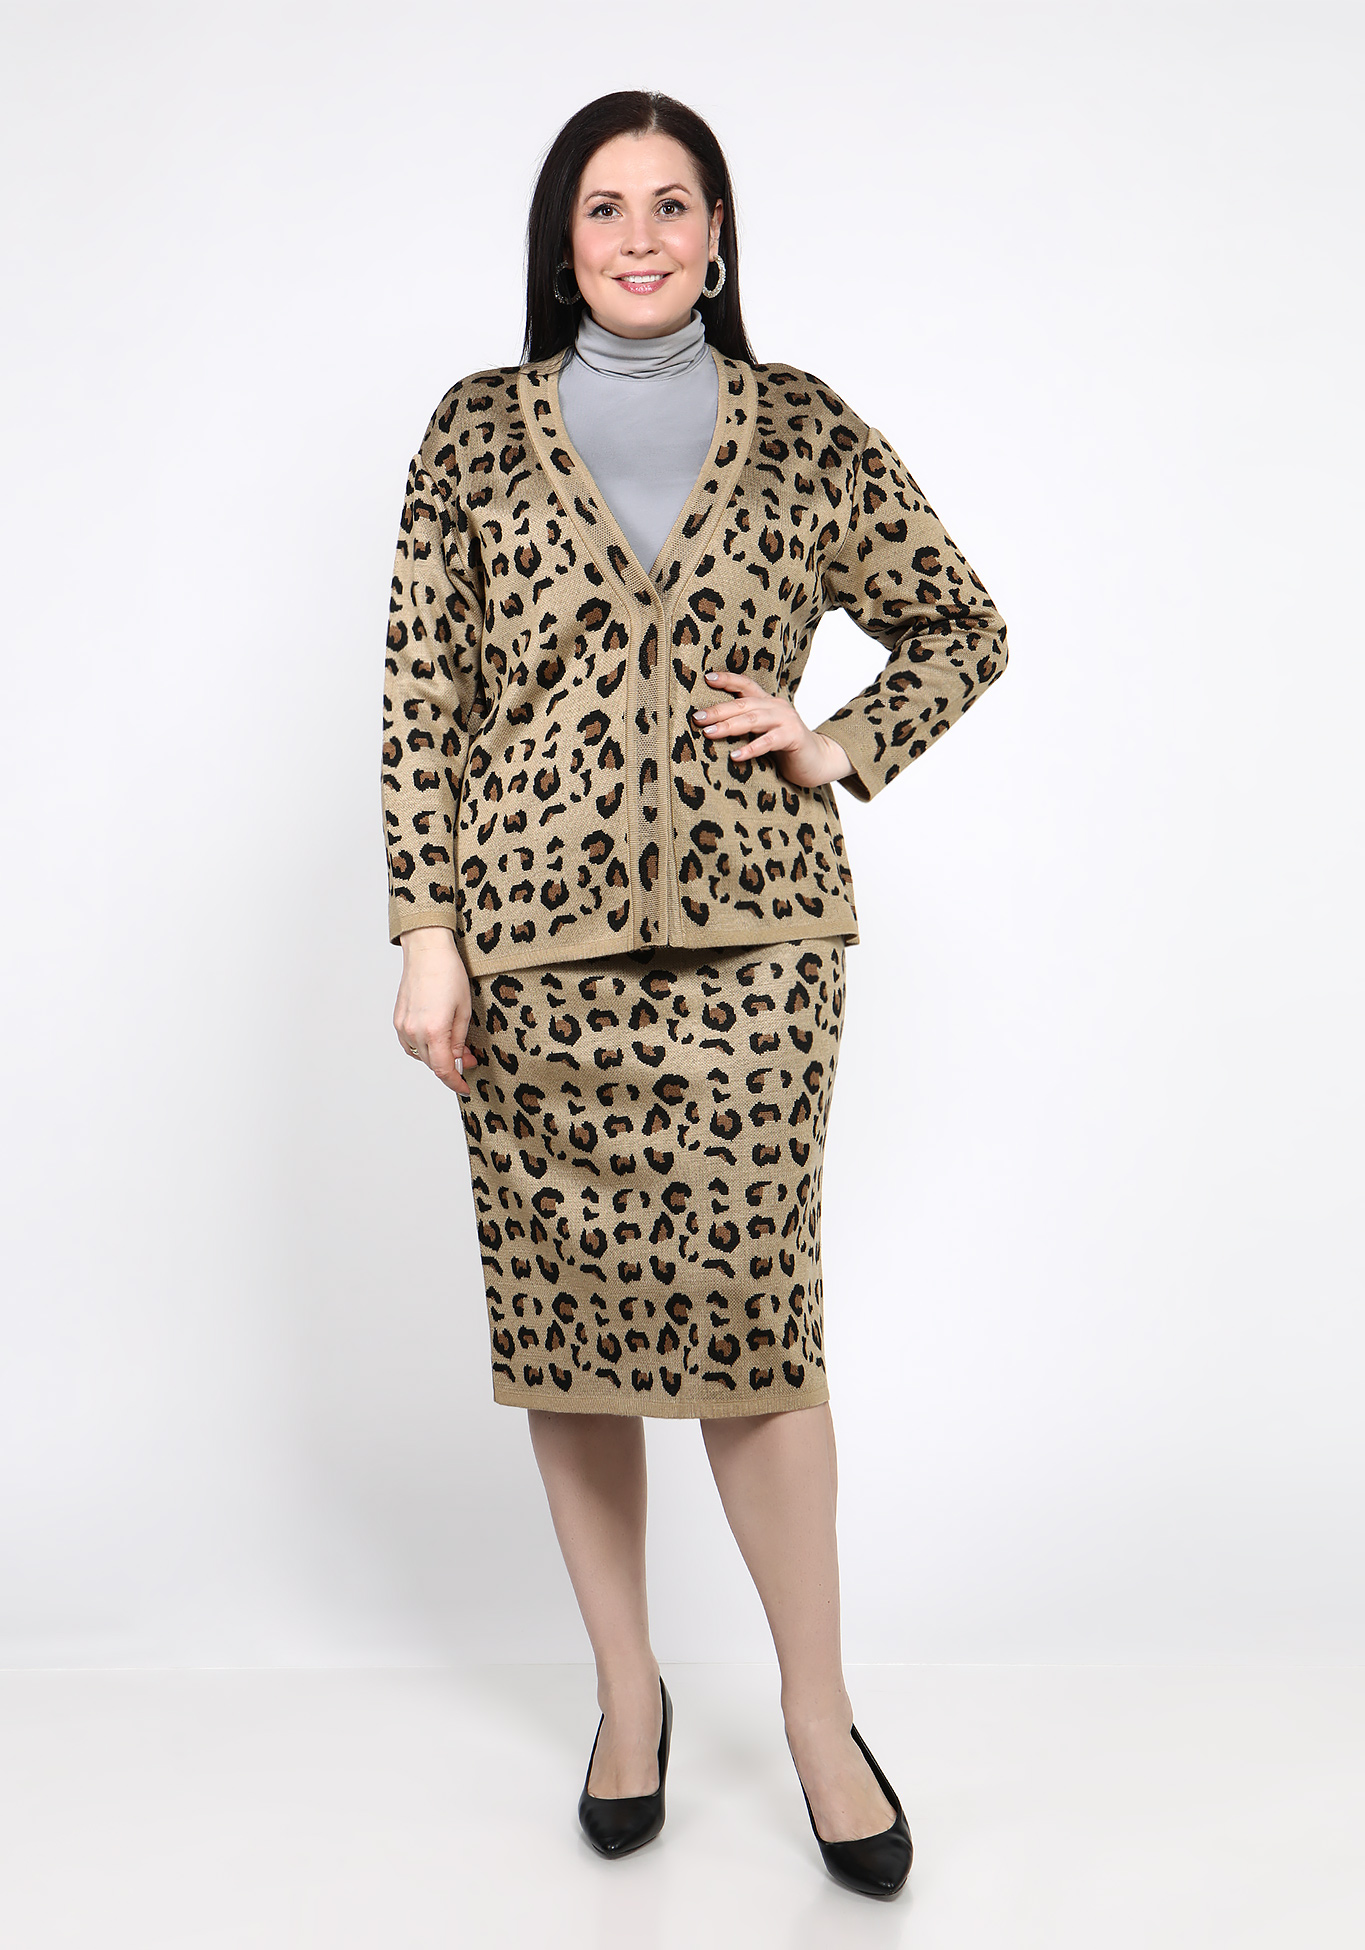 Жакет с леопардовым принтом Vivawool, размер 48, цвет молочный - фото 2